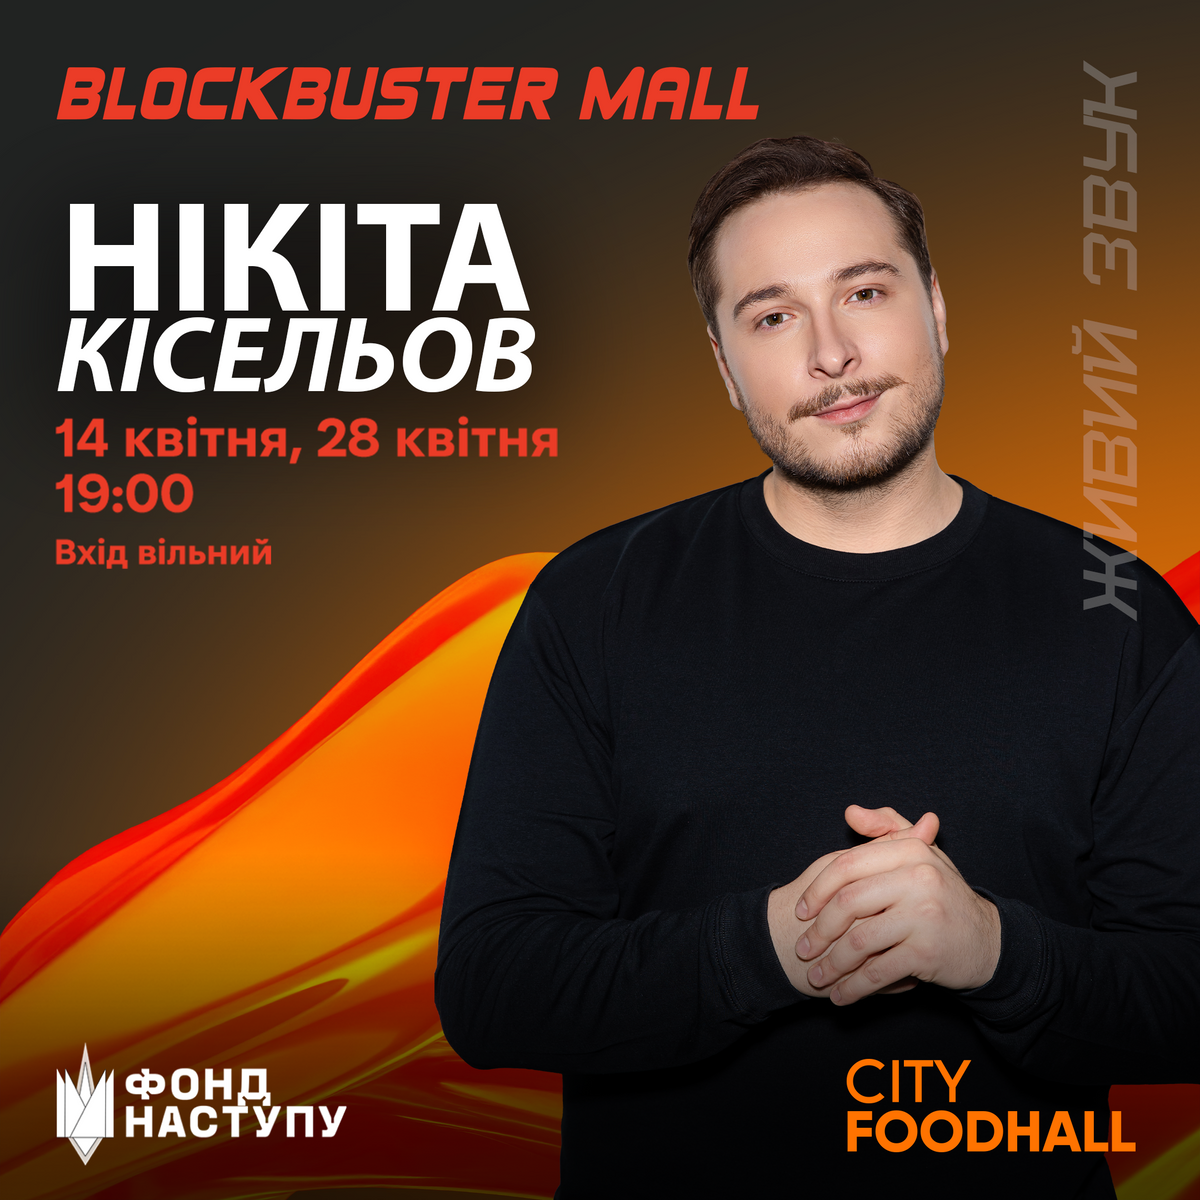 Nikita Kiselyov at Blockbuster Mall